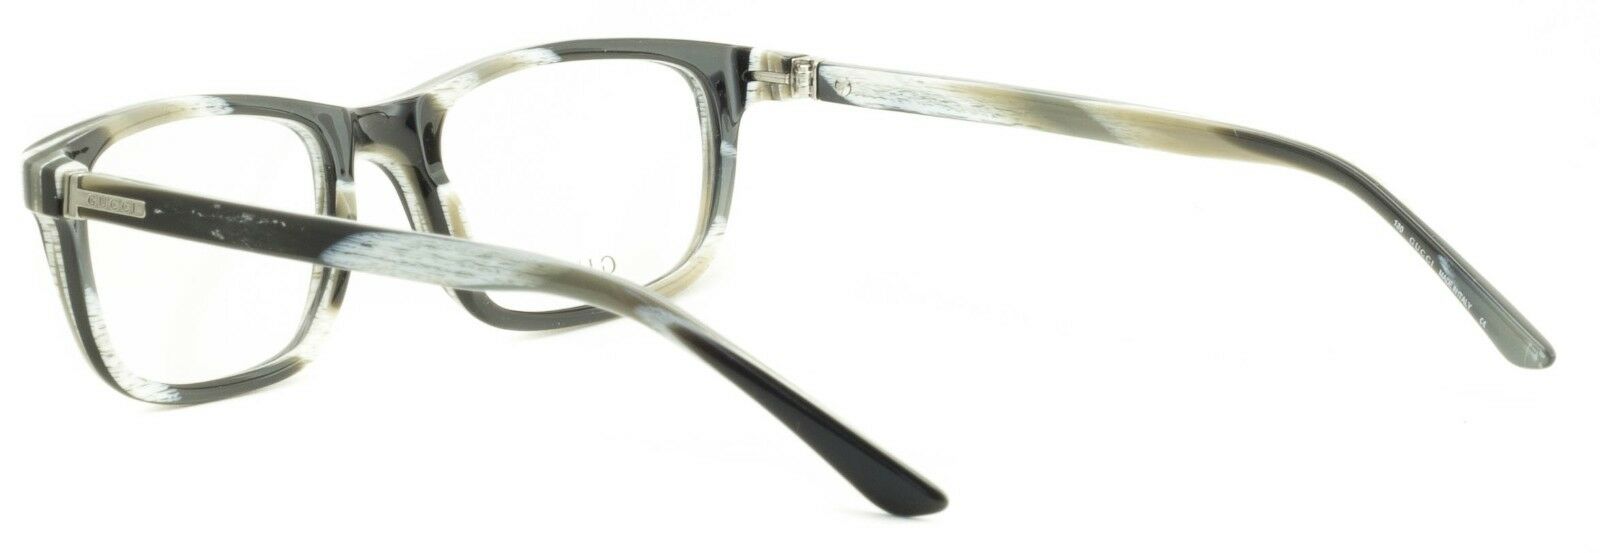 GUCCI GG 1436 5MY Eyewear FRAMES NEW Glasses RX Optical Eyeglasses ITALY - BNIB